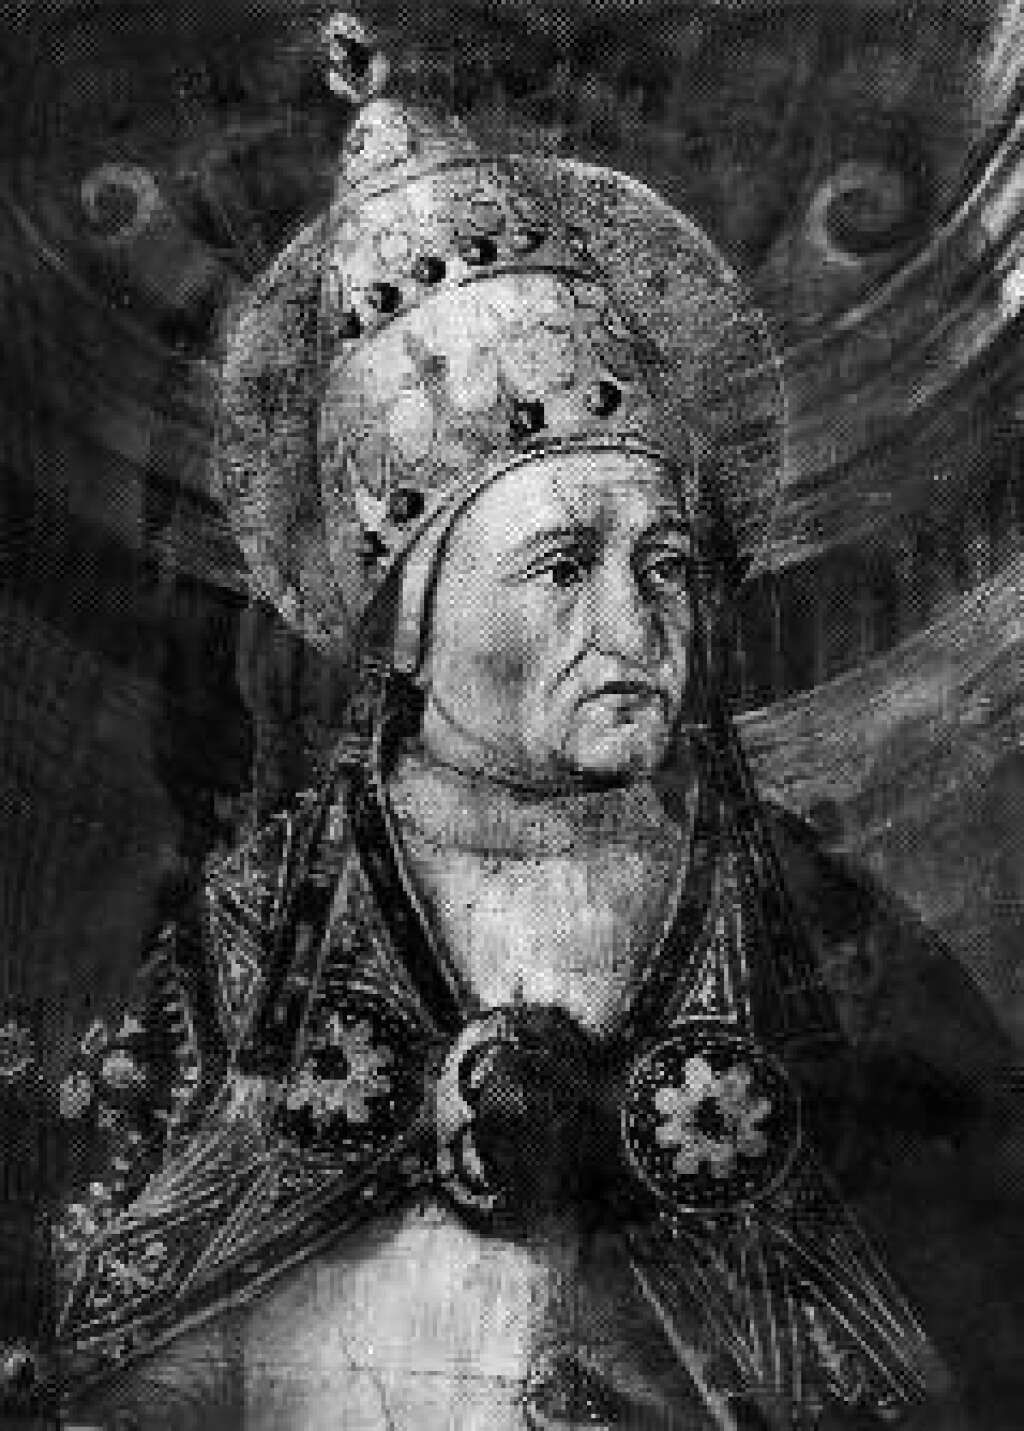 Felix I - Jan. 5, 269 – Dec. 30, 274